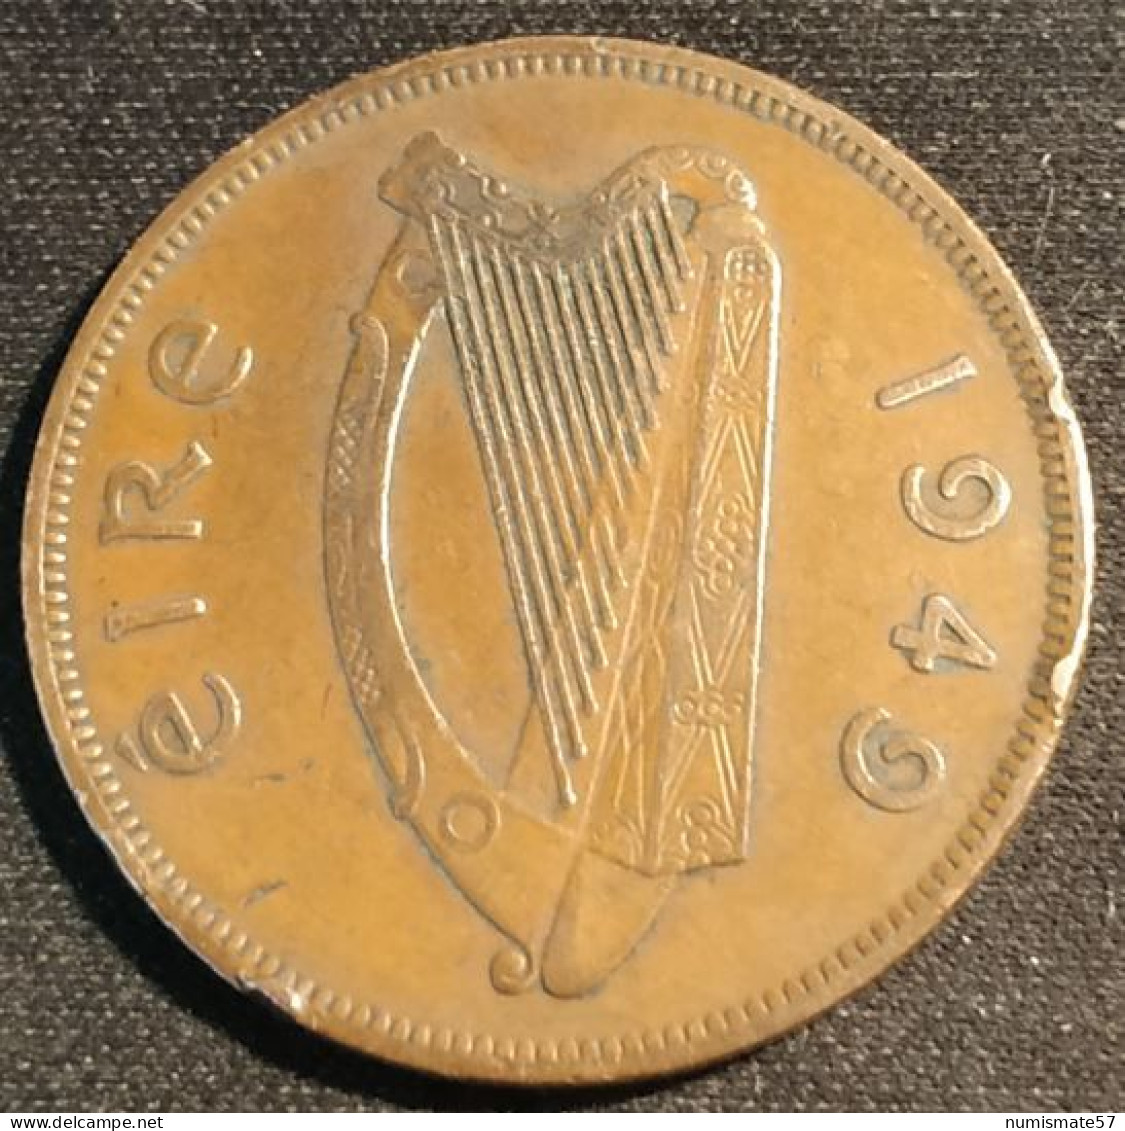 IRLANDE - EIRE - 1 PINGIN 1949 - KM 11 - PENNY - IRELAND - Irland